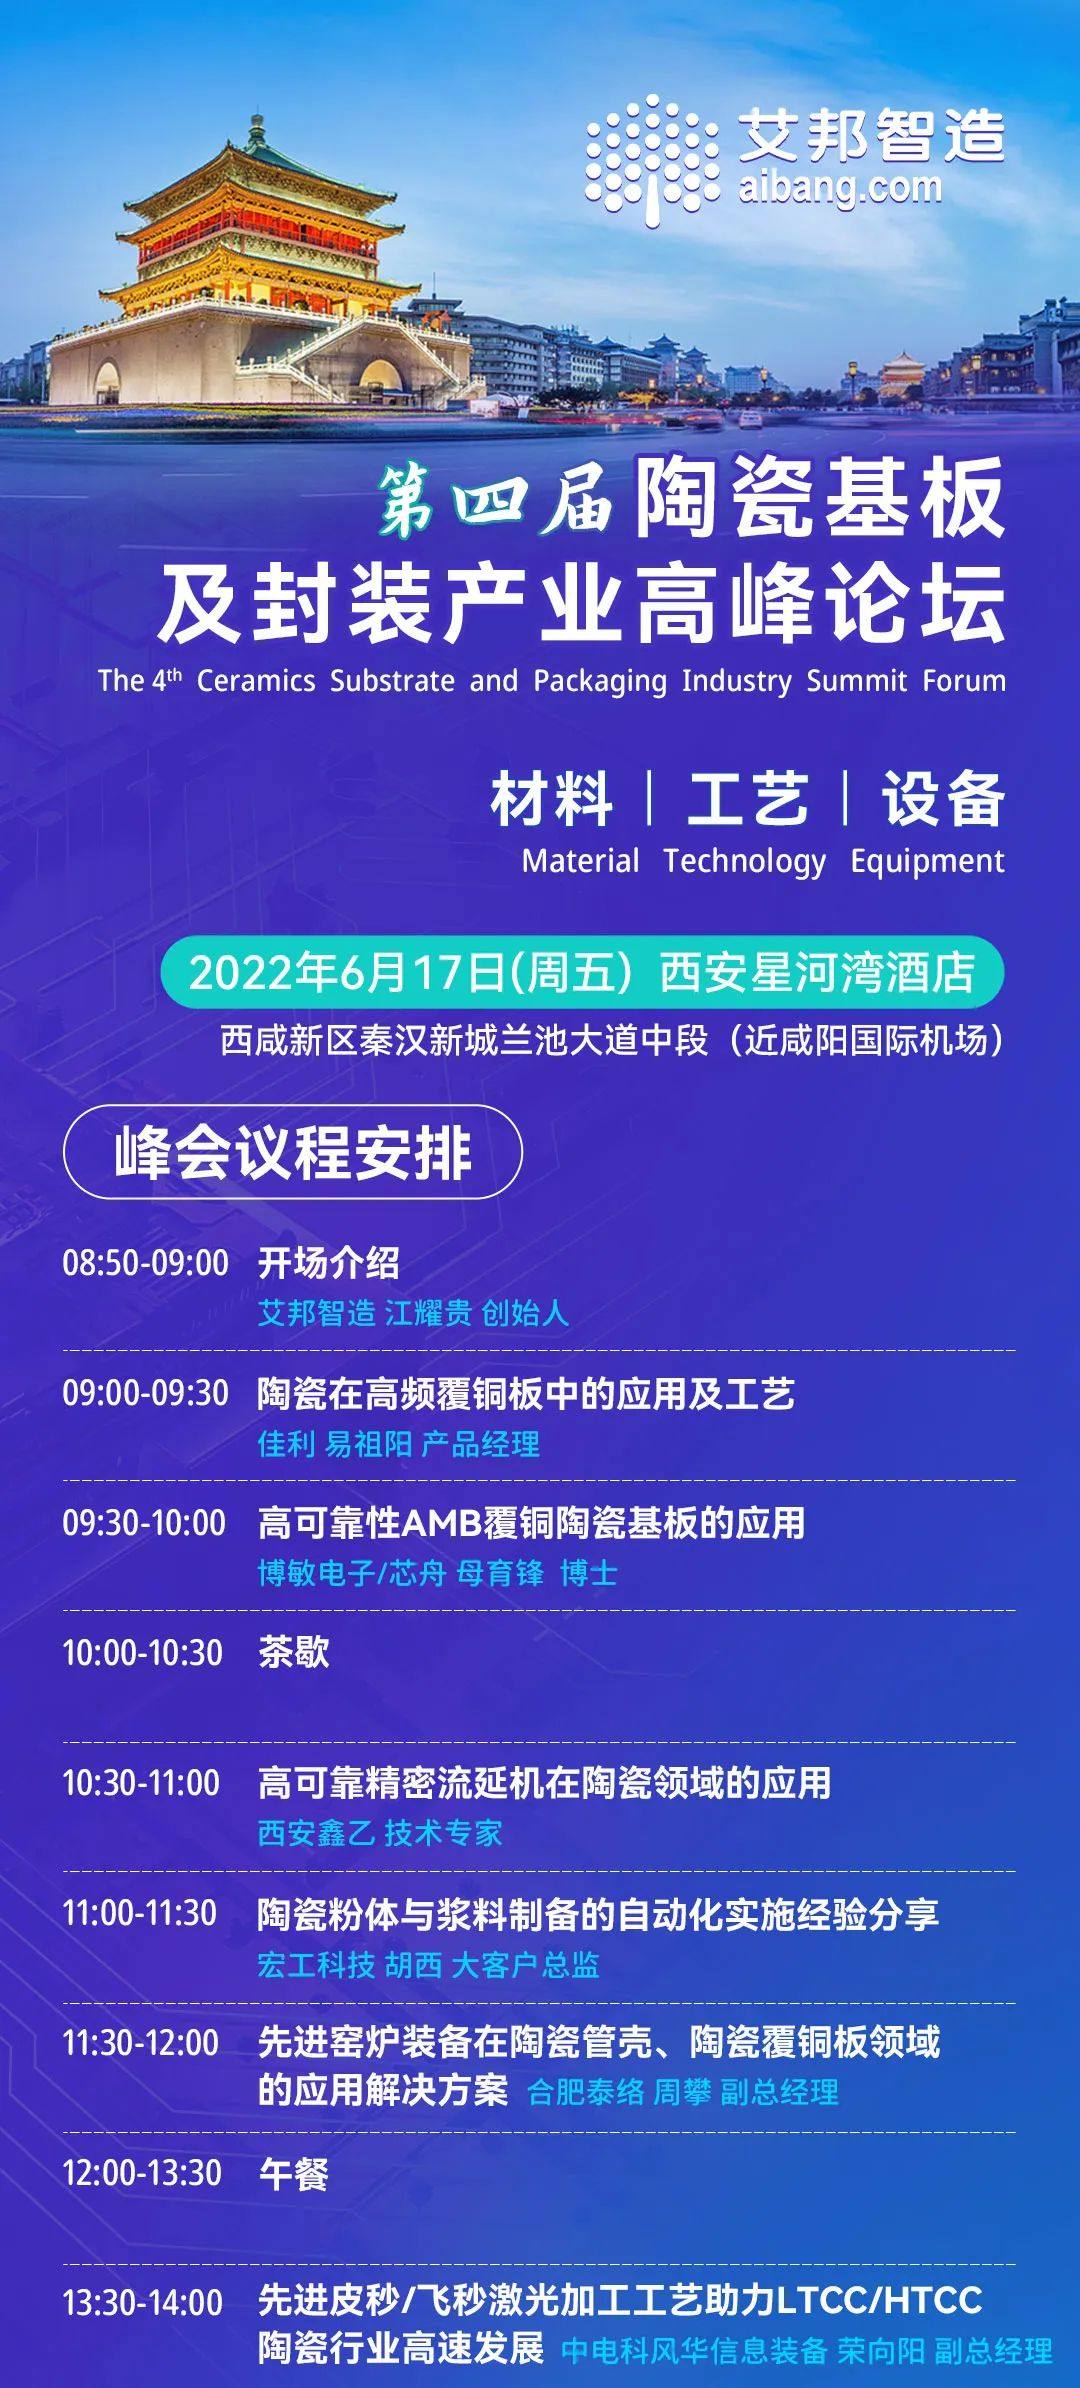 武汉利之达科技将出席第四届陶瓷基板及封装产业高峰论坛并做主题演讲